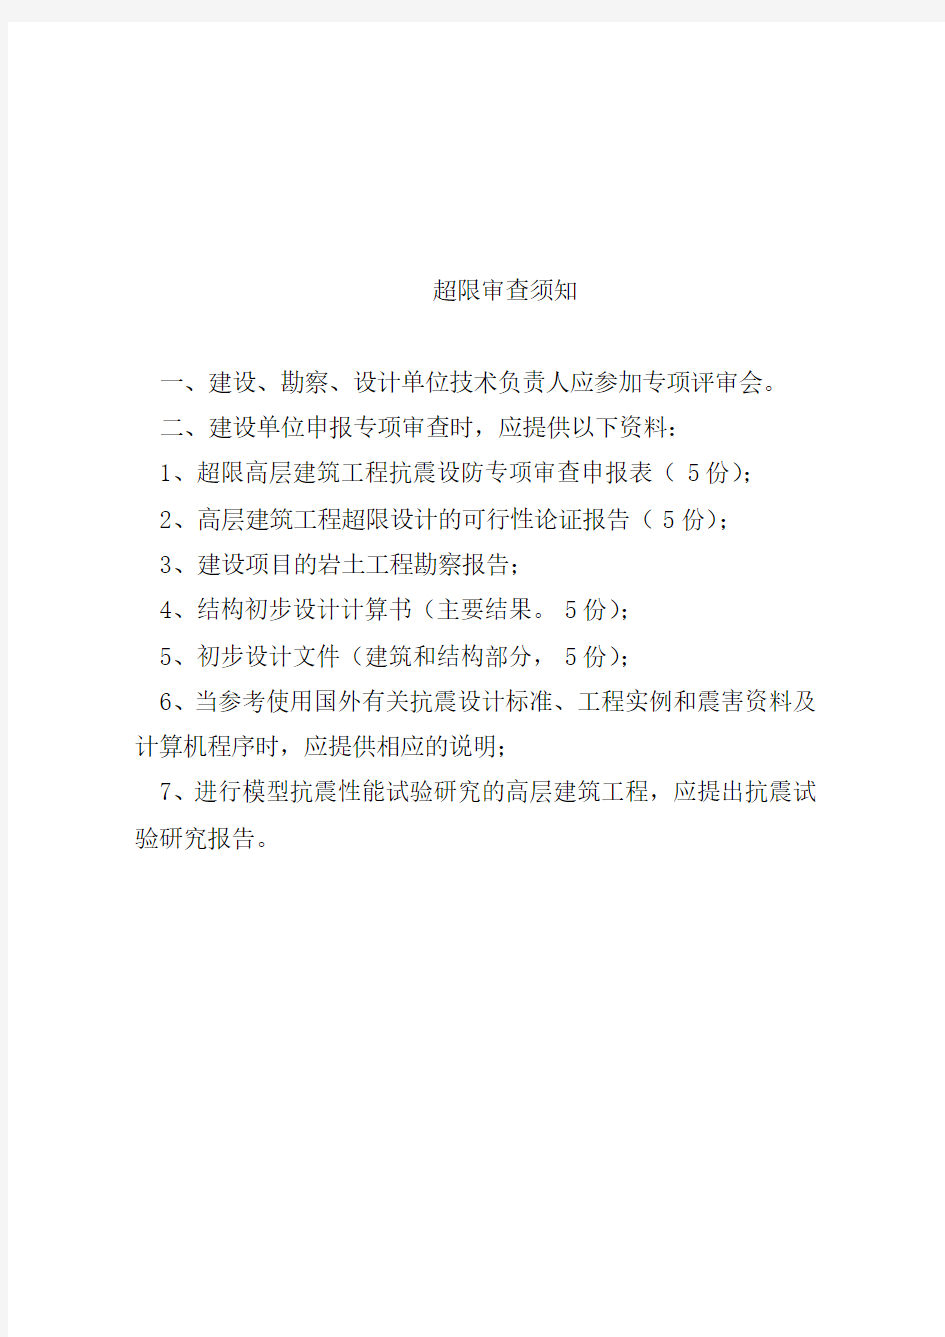 河南省超限高层建筑工程抗震设防专项审批申报表